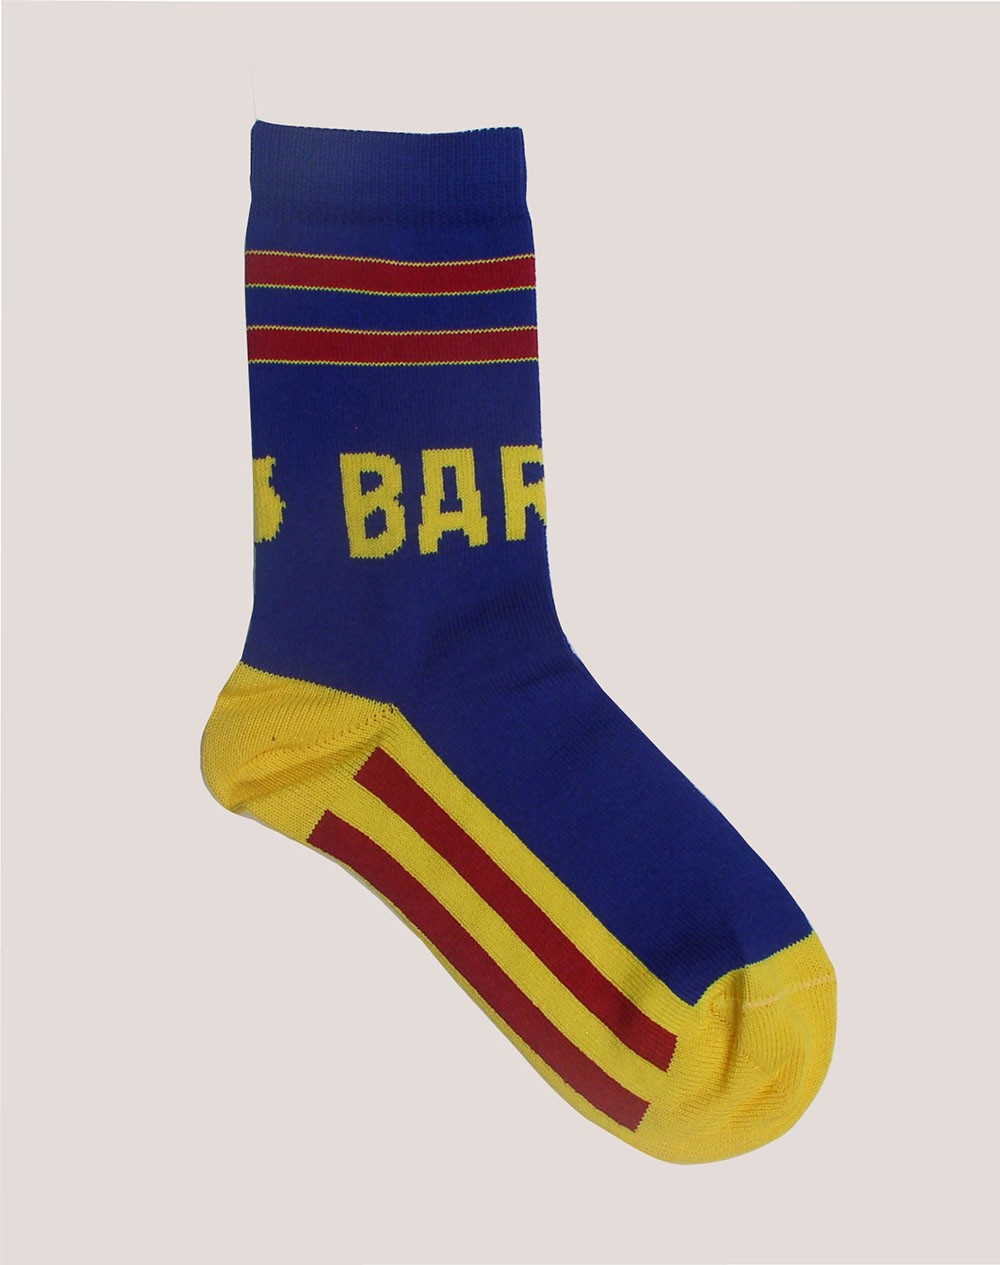 Socks Azulpolar - 1st team shirt Barça short socks-2604514-433